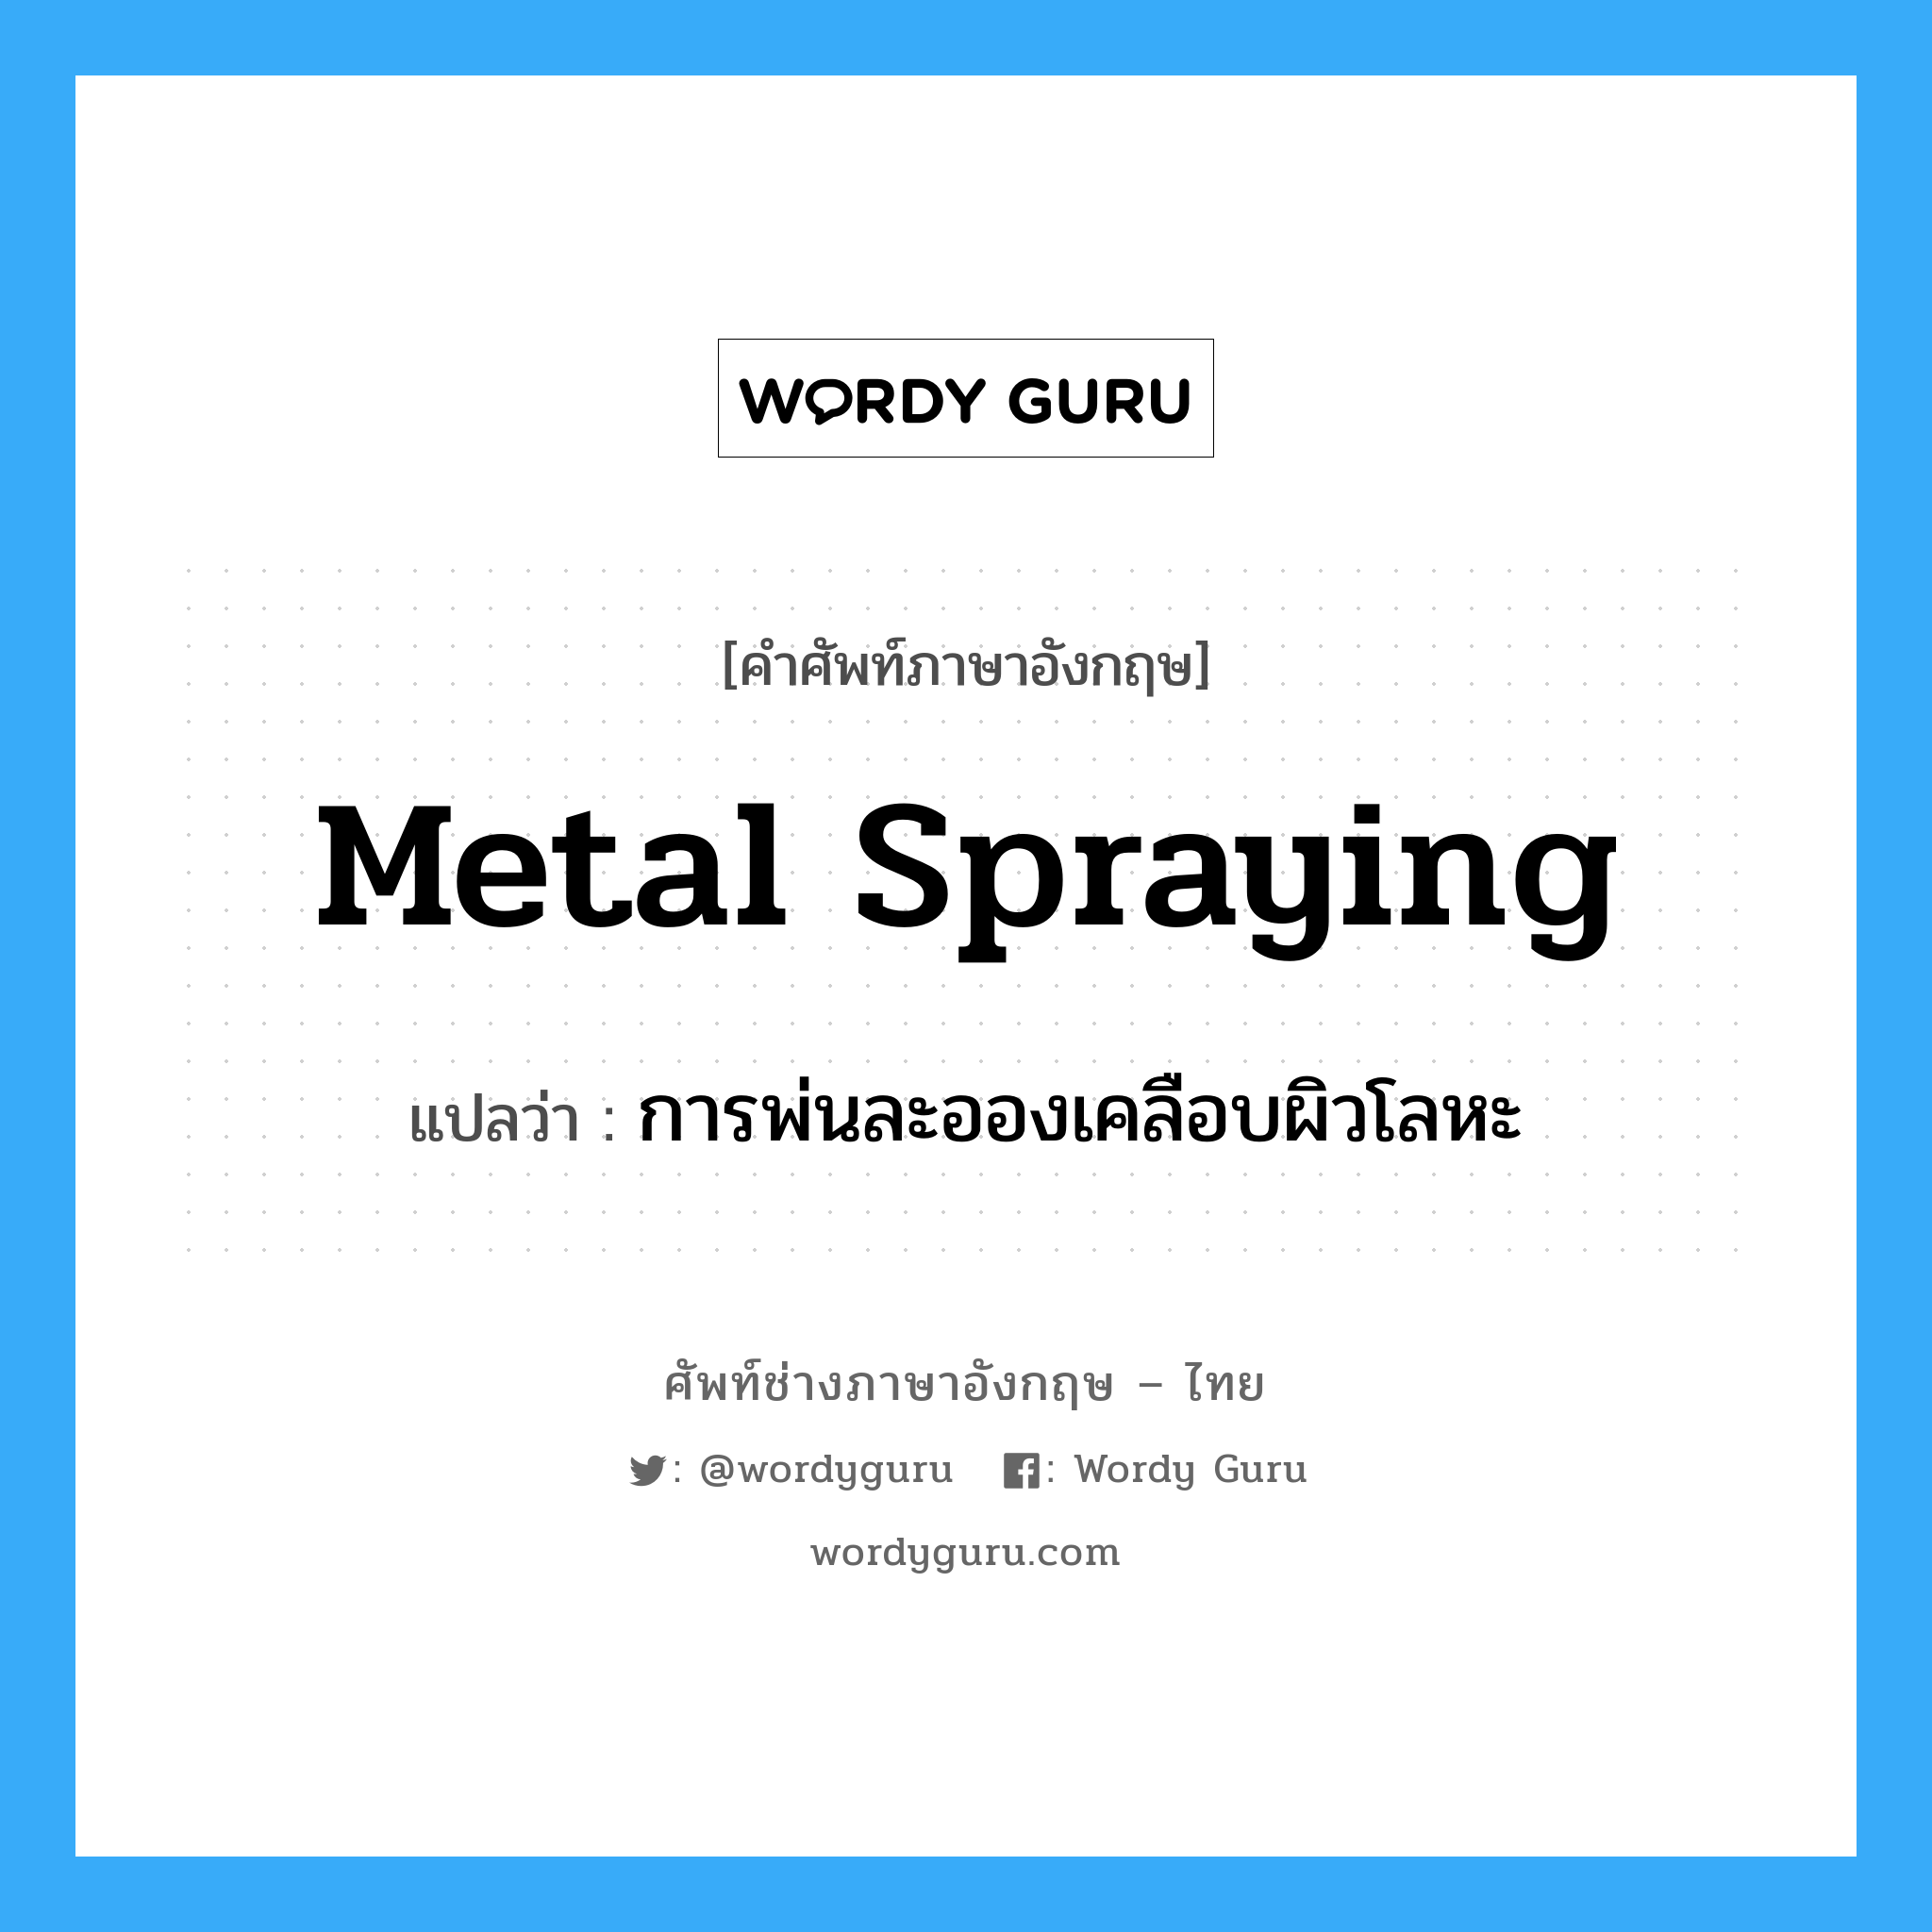 metal spraying แปลว่า?, คำศัพท์ช่างภาษาอังกฤษ - ไทย metal spraying คำศัพท์ภาษาอังกฤษ metal spraying แปลว่า การพ่นละอองเคลือบผิวโลหะ